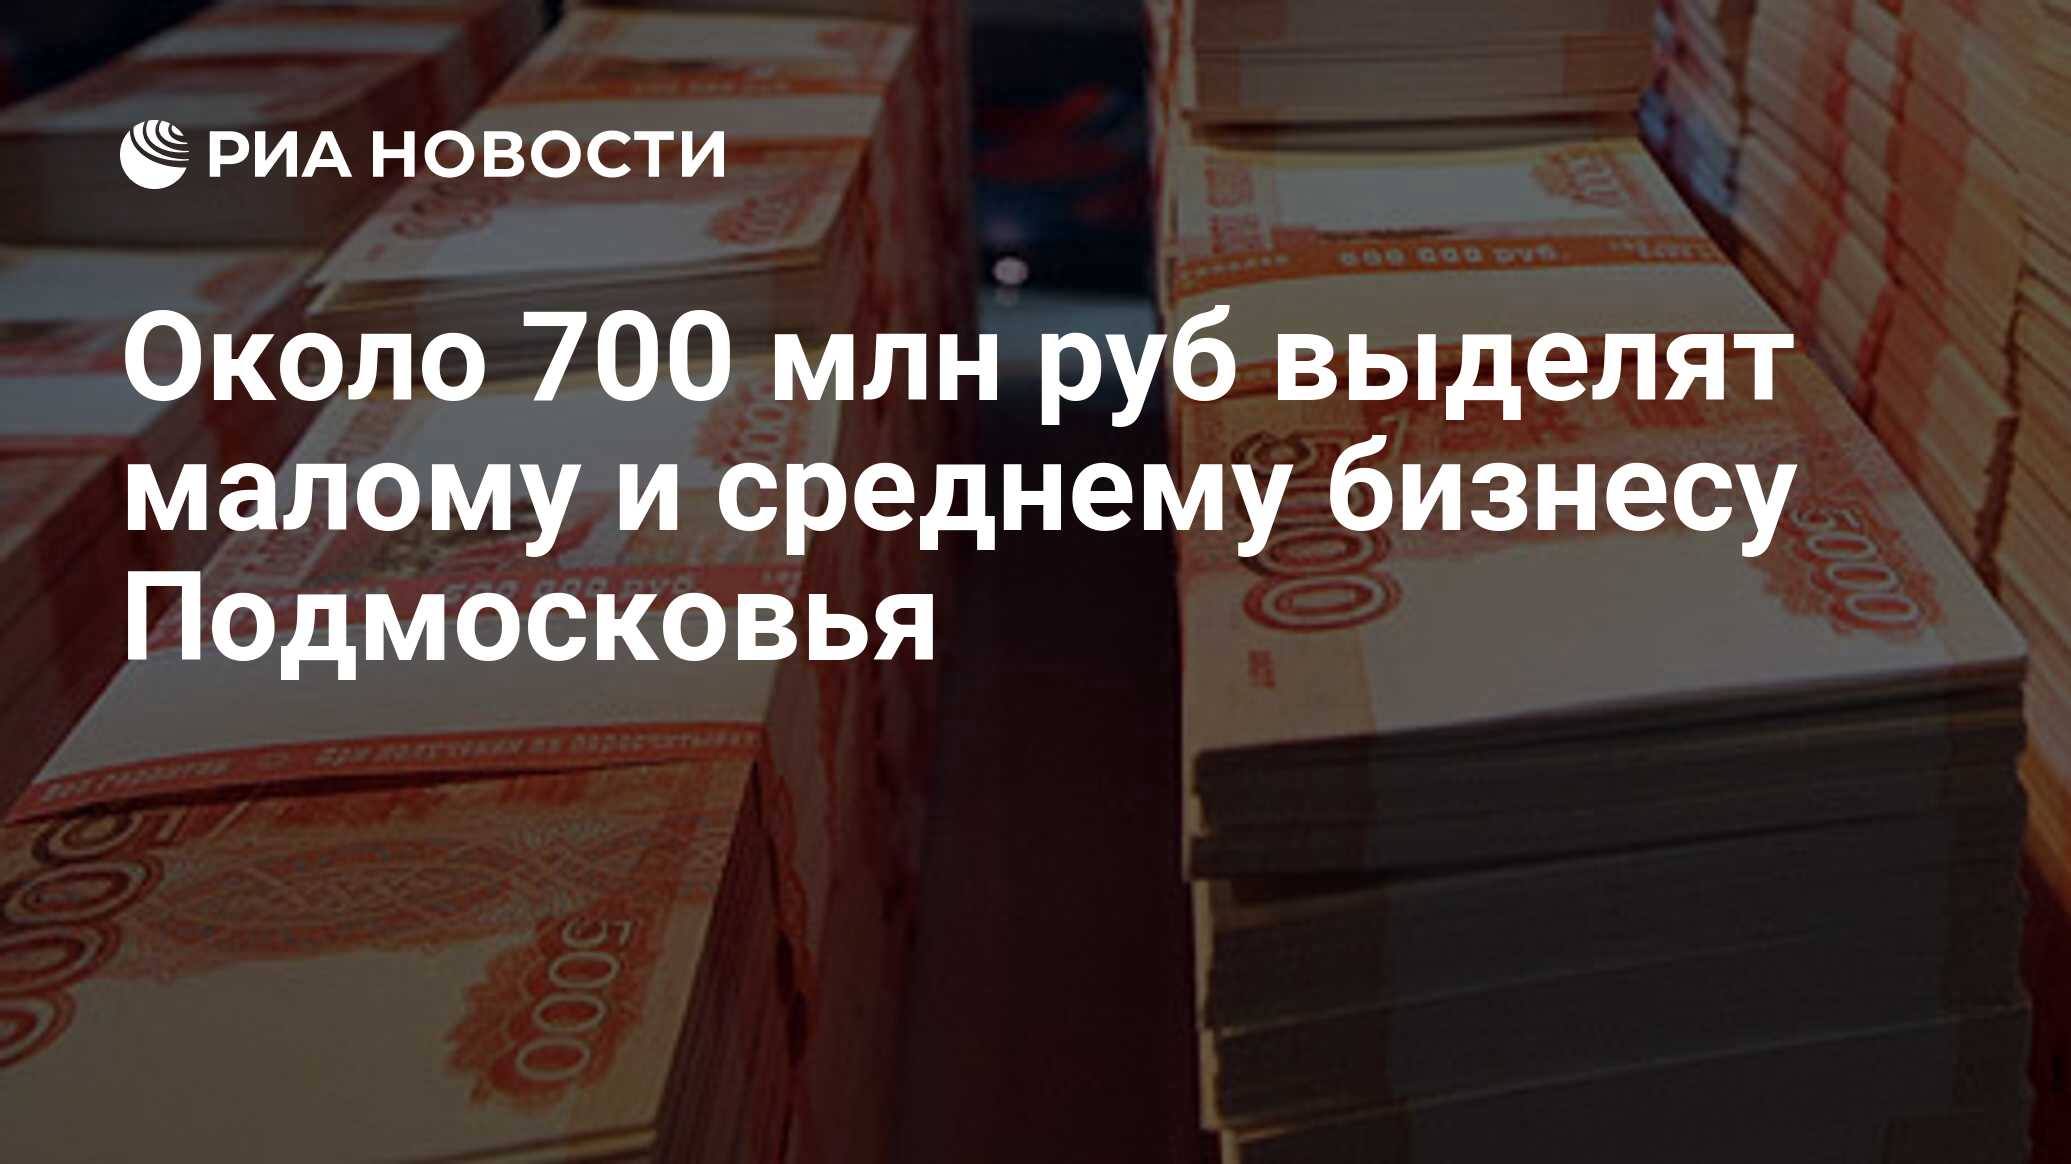 64 миллиона рублей